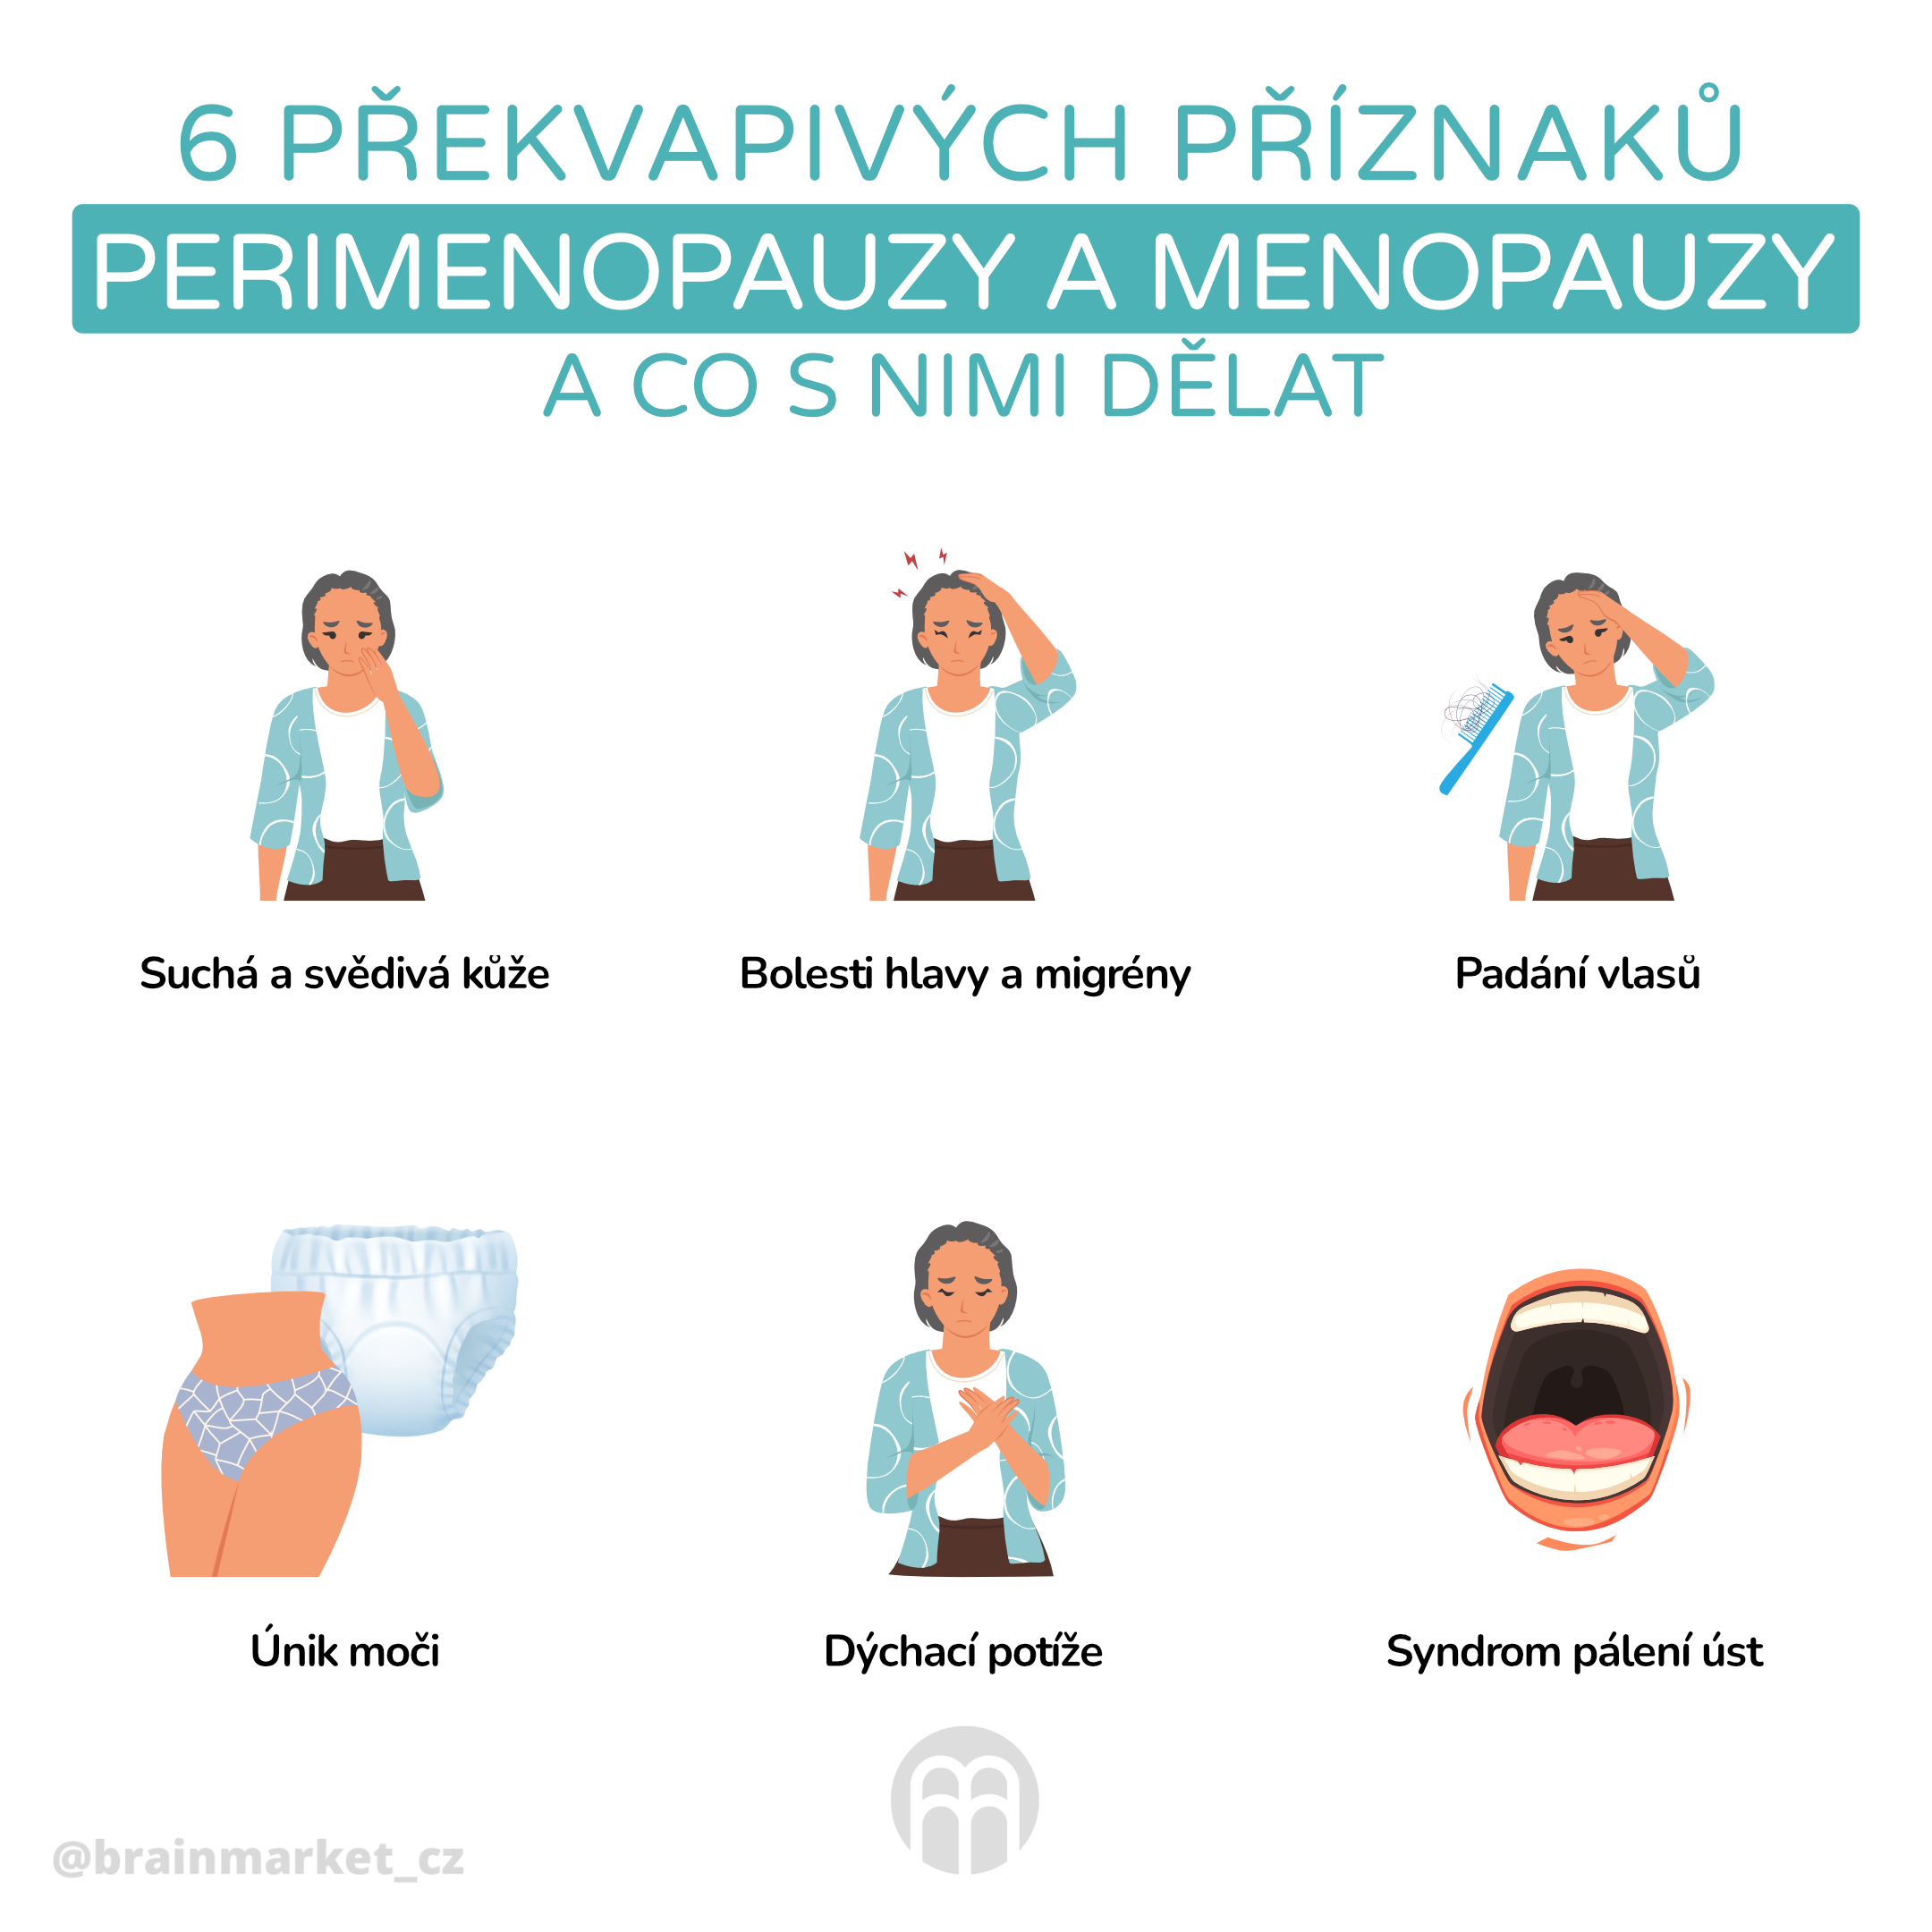 6 proznaku premiopauzy a menopauzy_infografika_cz